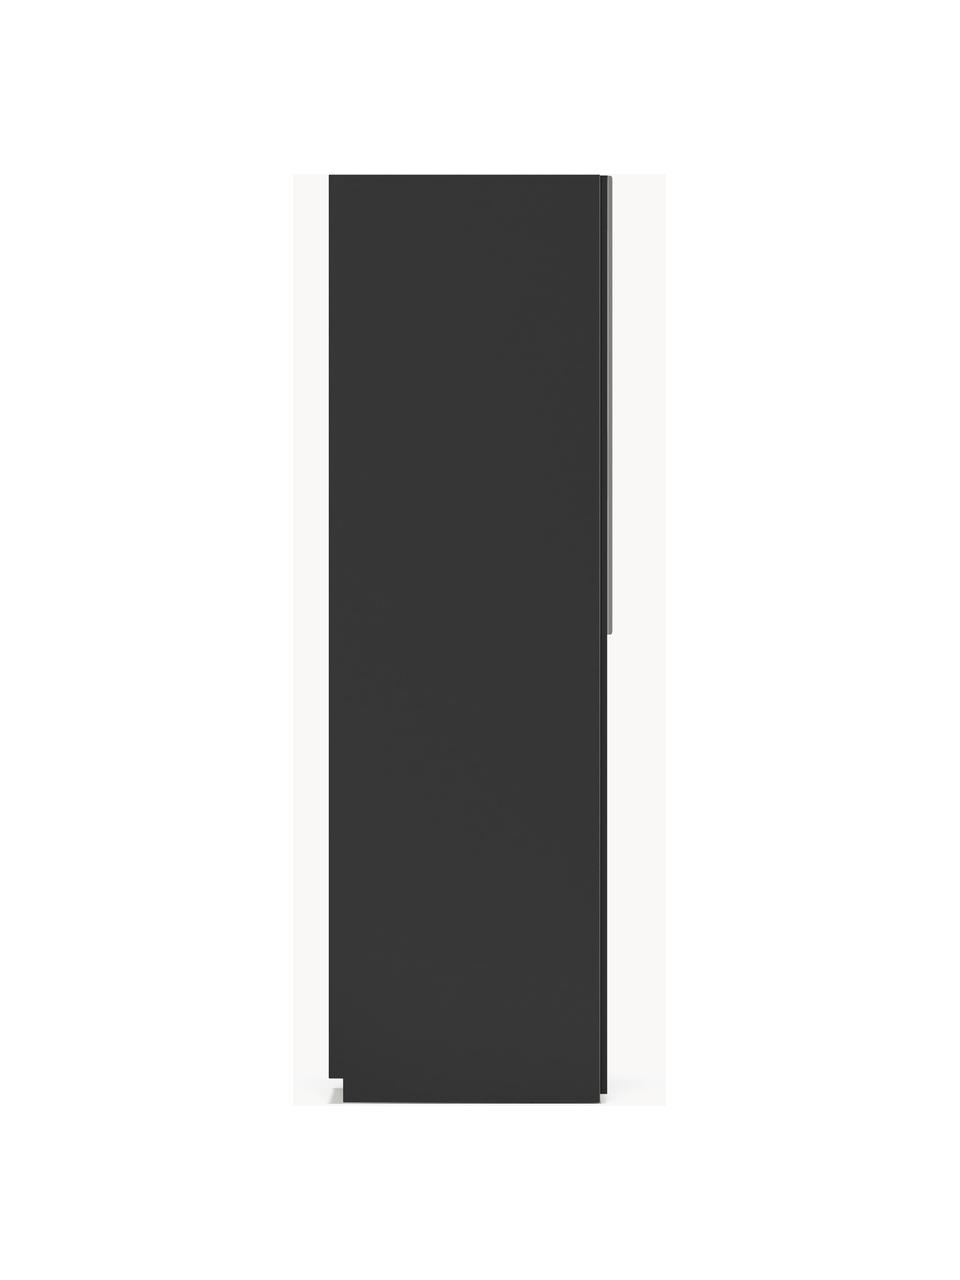 Modulaire draaideurkast Leon, 50 cm breed, diverse varianten, Frame: met melamine beklede spaa, Zwart, Basis interieur, B 50 x H 200 cm